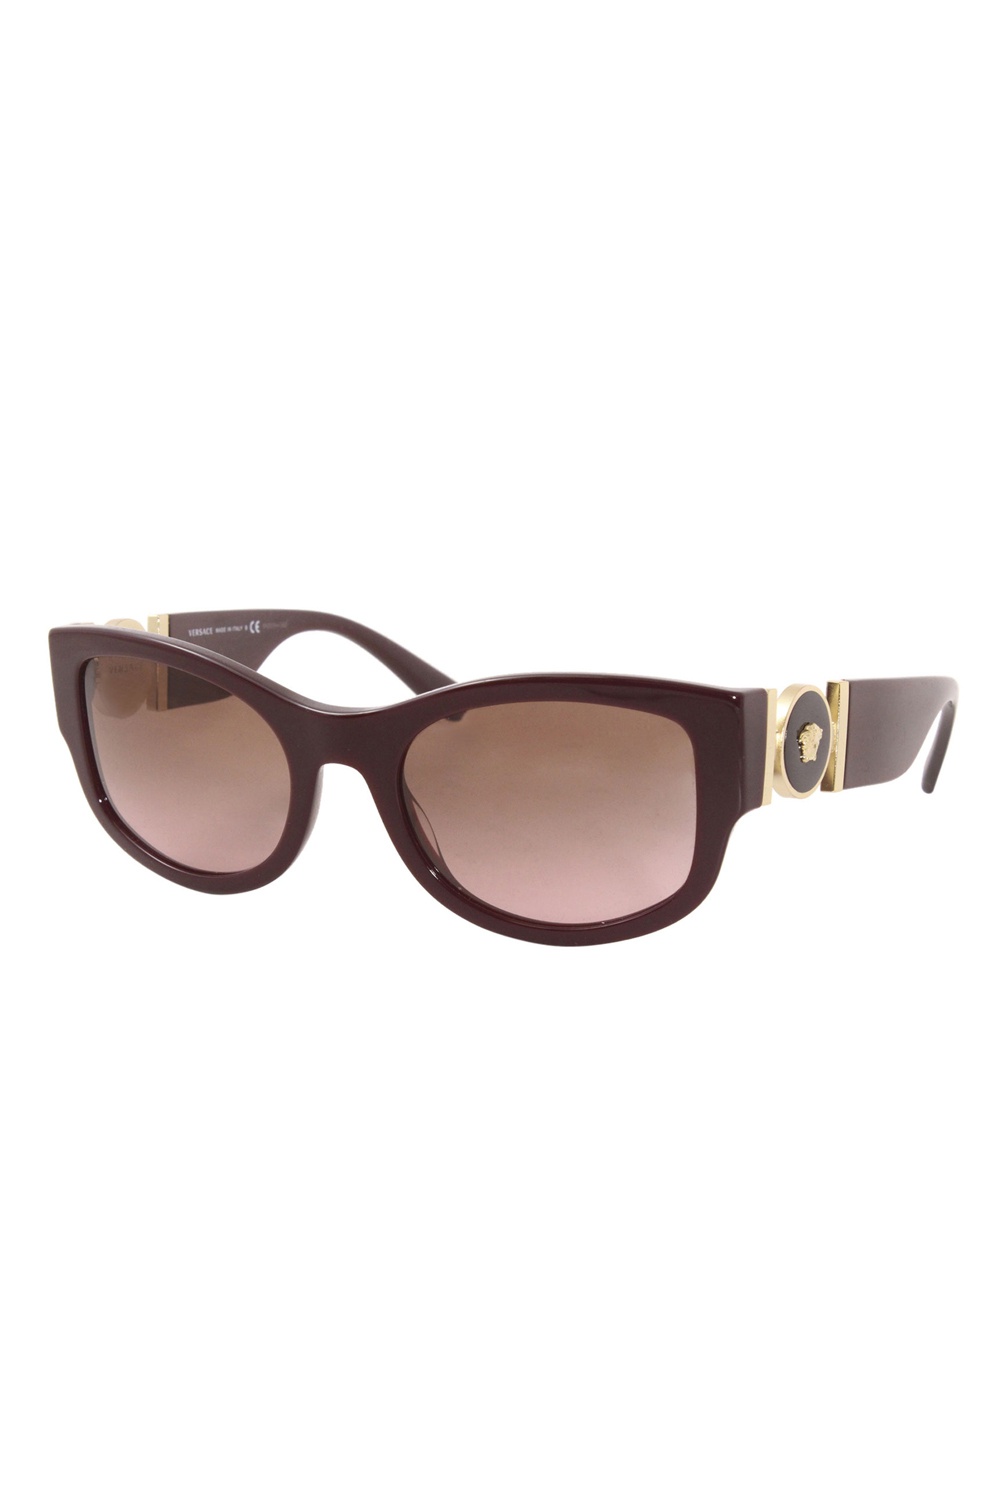 Versace Cat Eye Women Sunglasses | Odel.lk